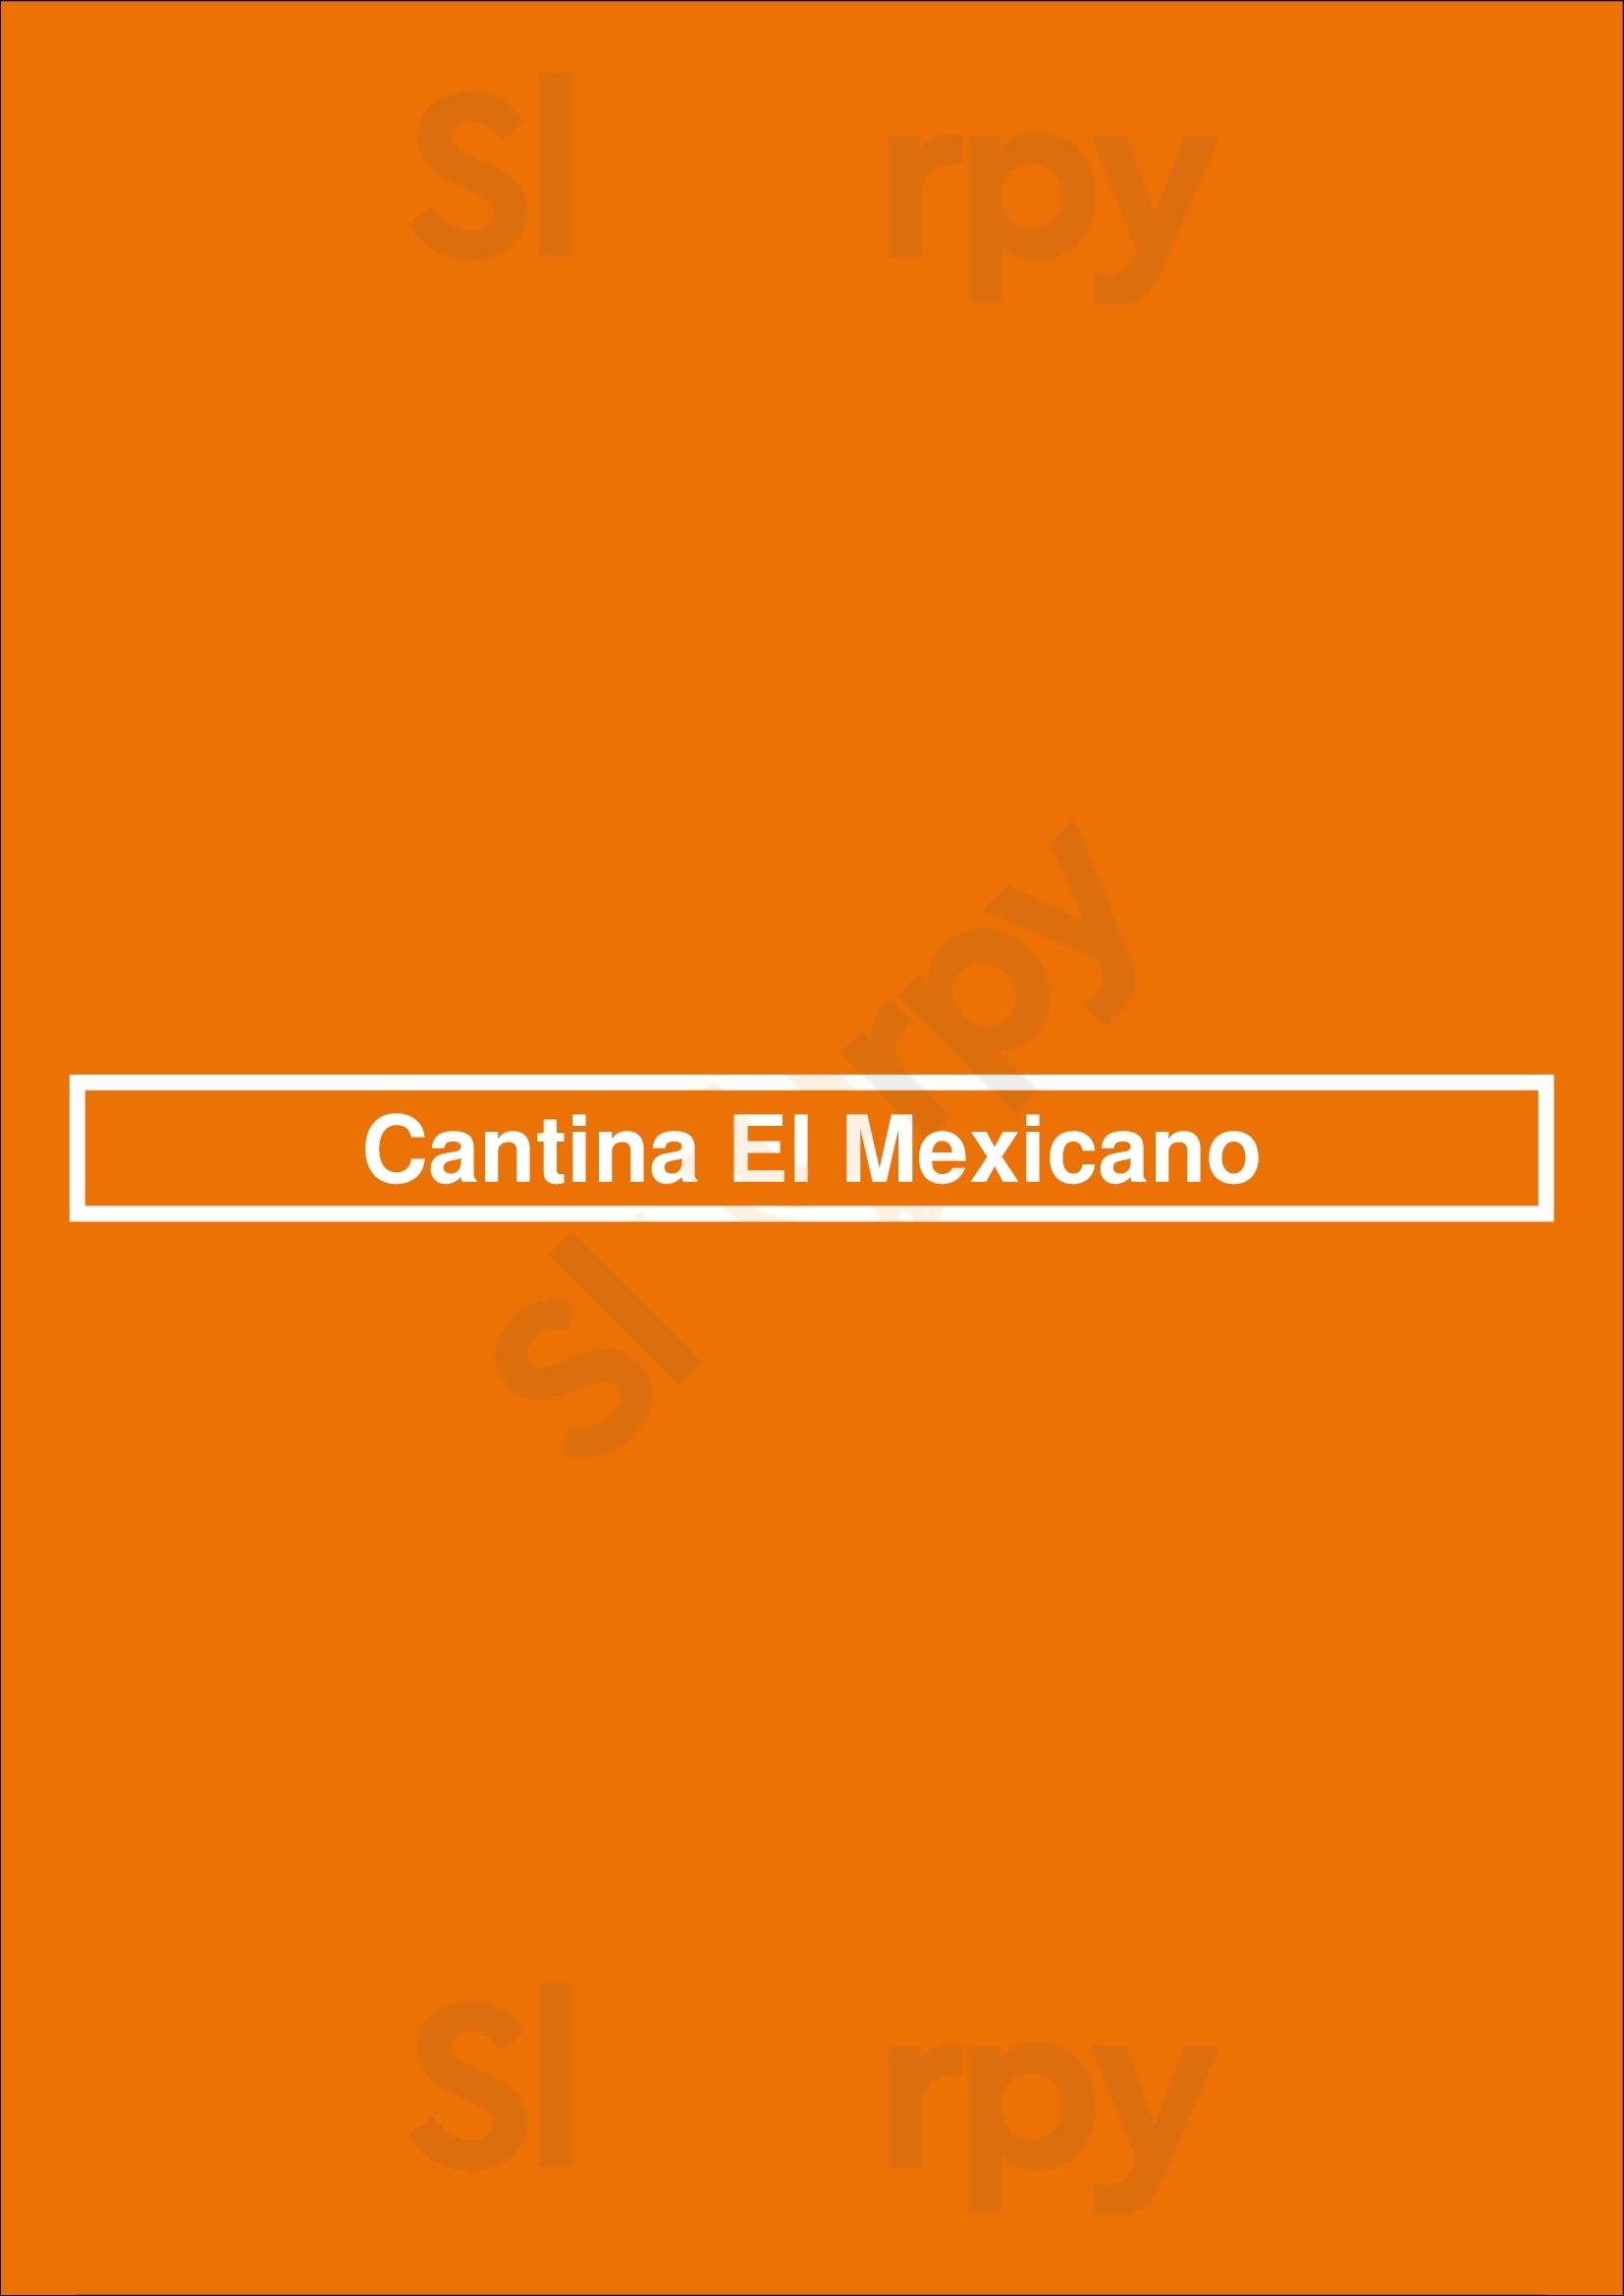 Cantina El Mexicano Funchal Menu - 1